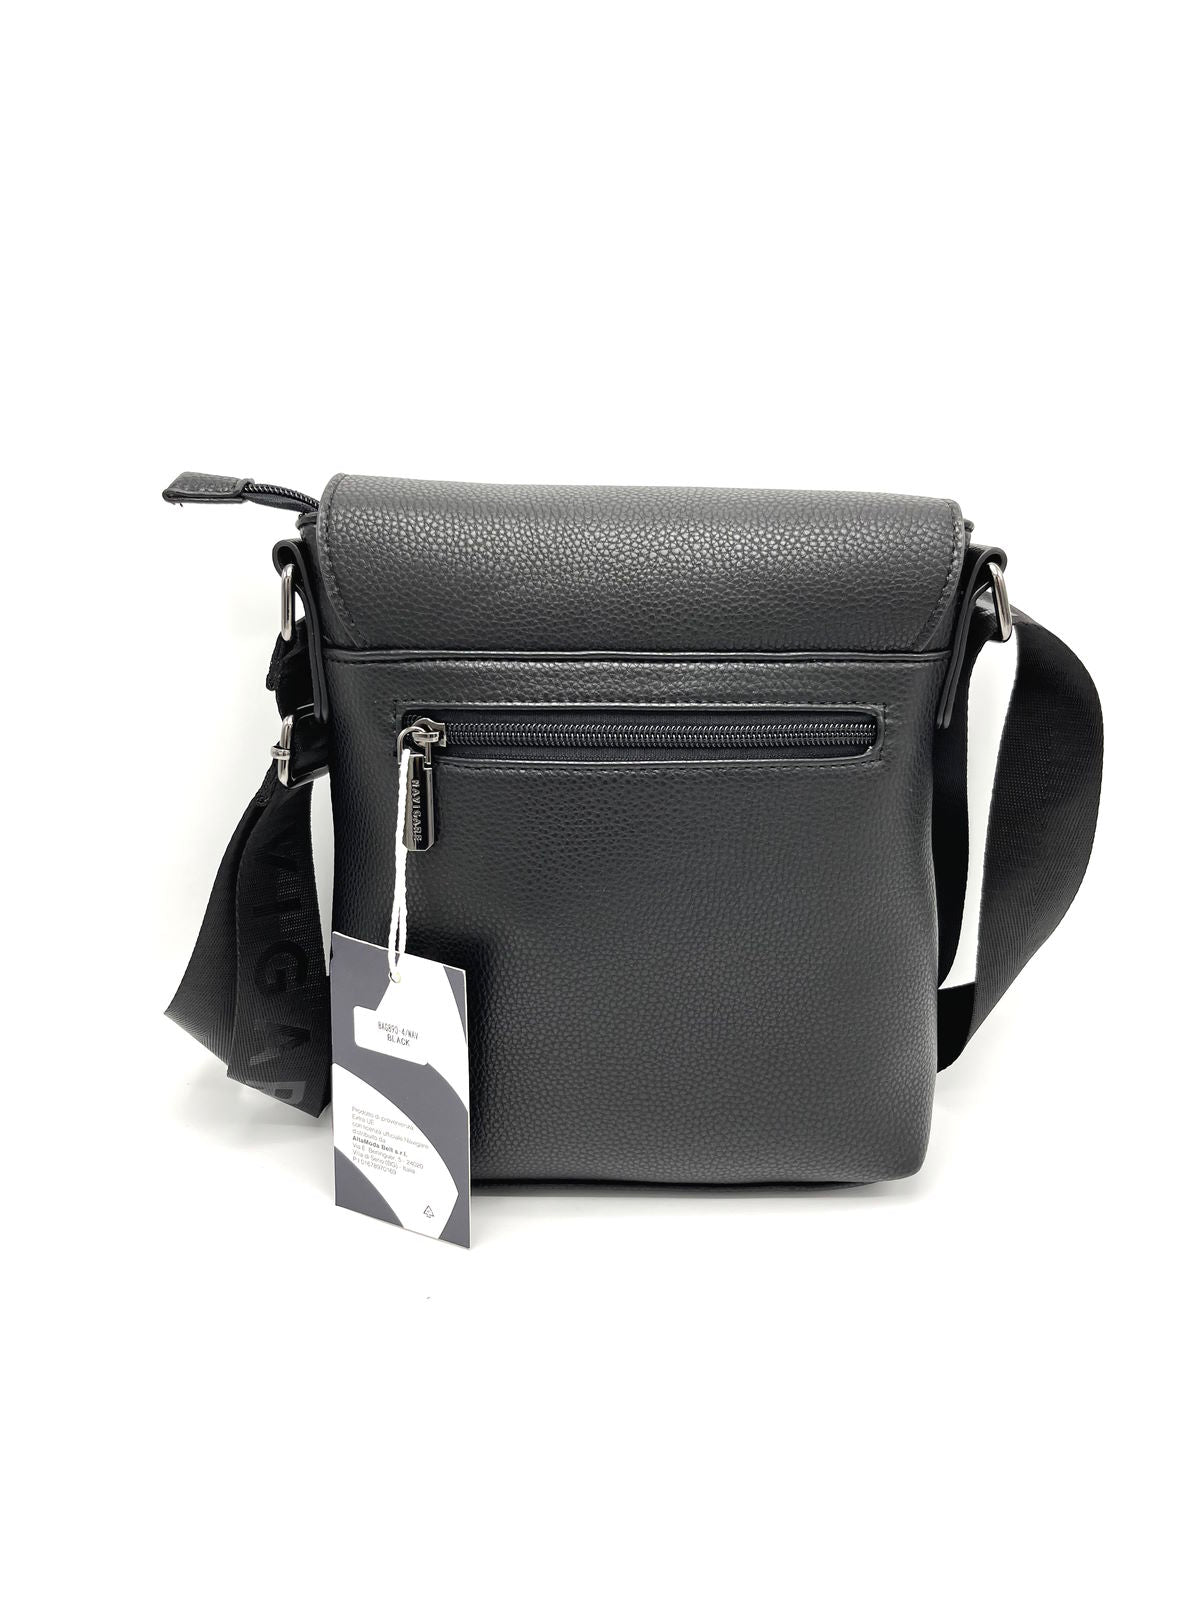 Brand NAVIGARE, Eco Leather Messenger Bag, art. BAG890-4.062